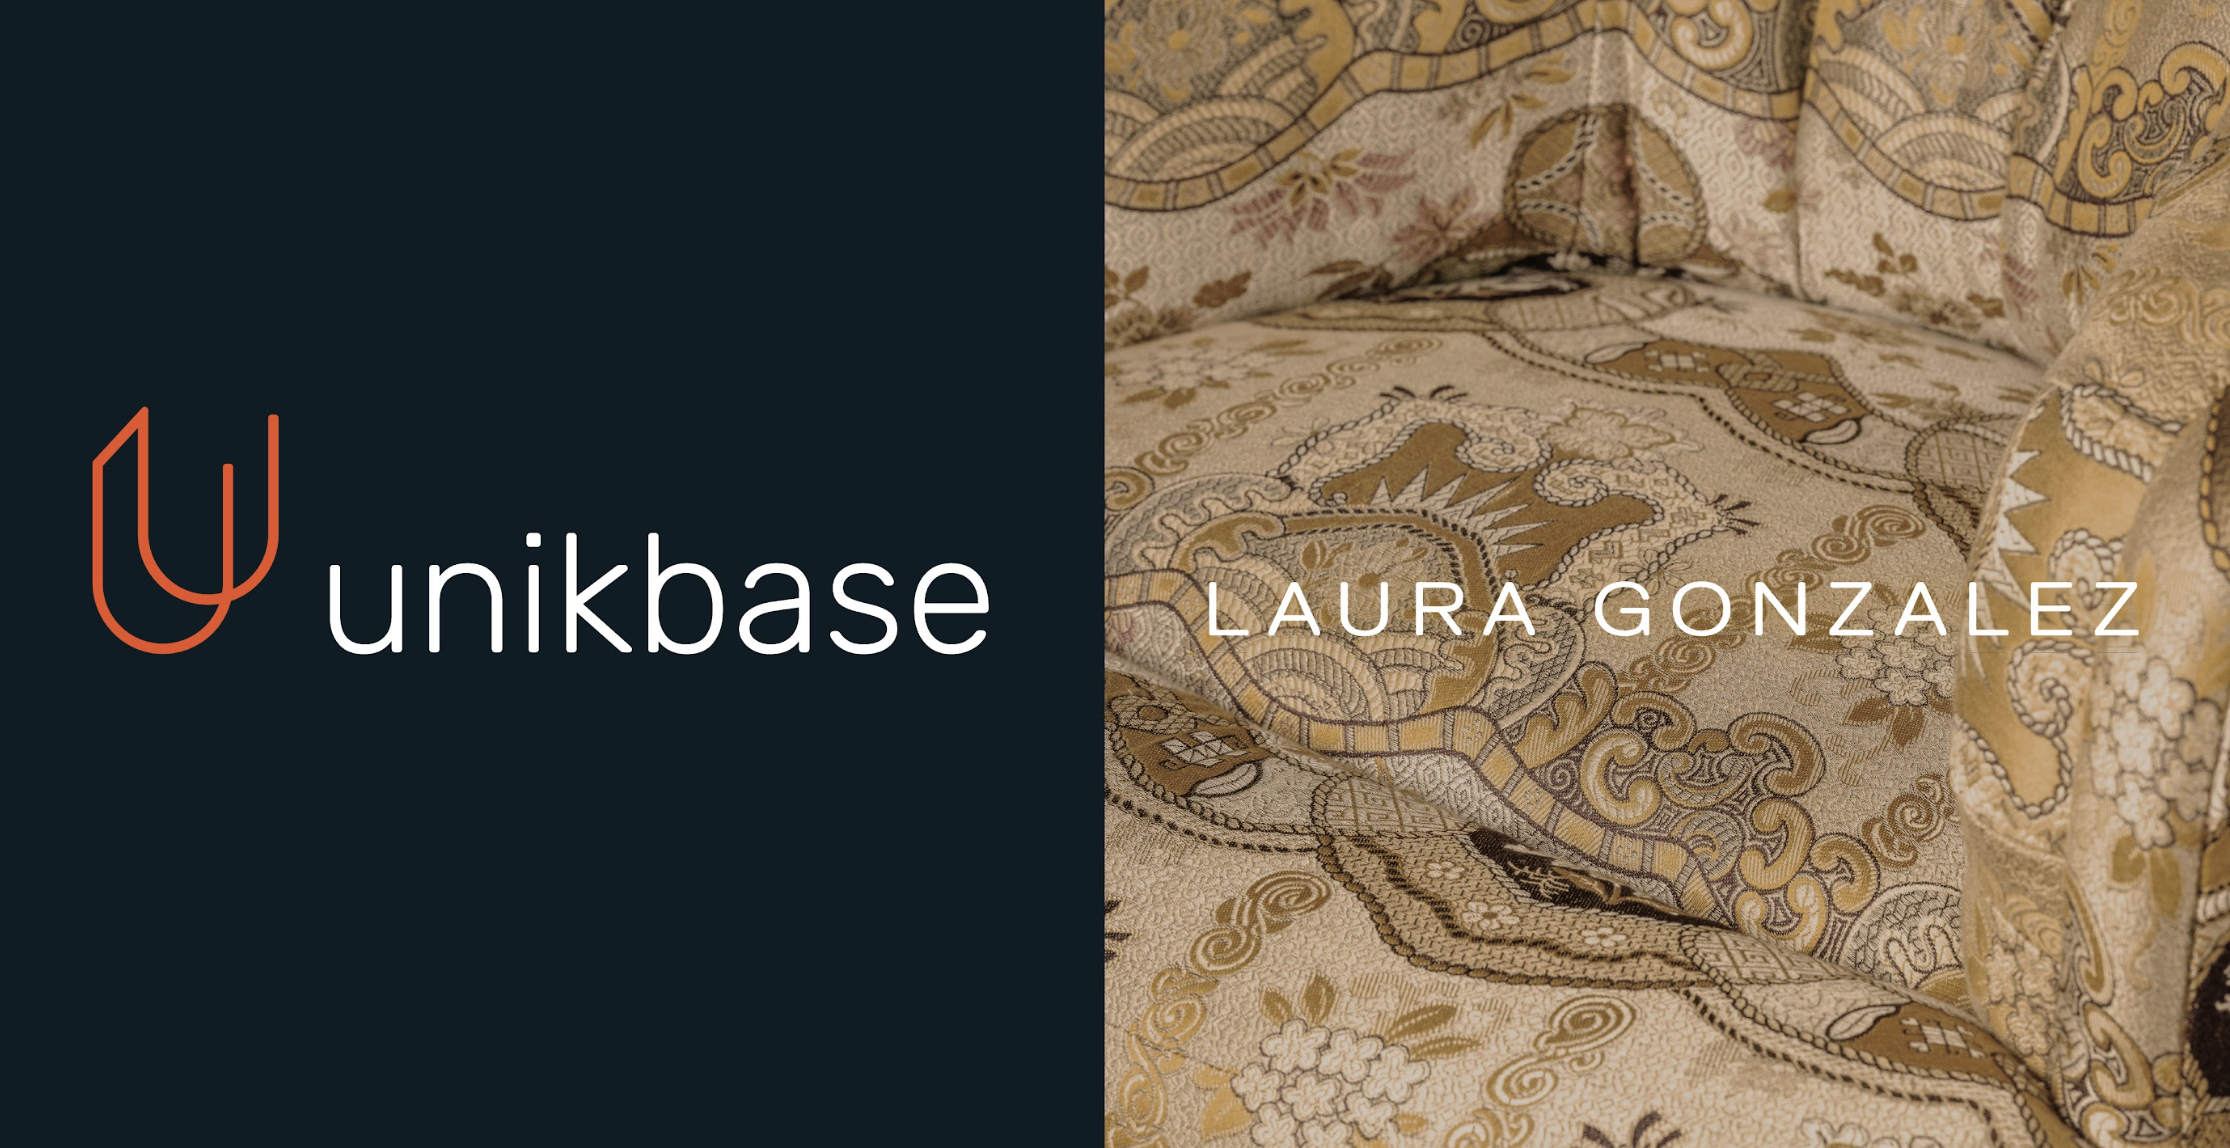 Unikbase, start-up dédiée à la création de doubles numériques s'embarque dans l'univers onirique de l'architecte d'intérieur, Laura Gonzalez